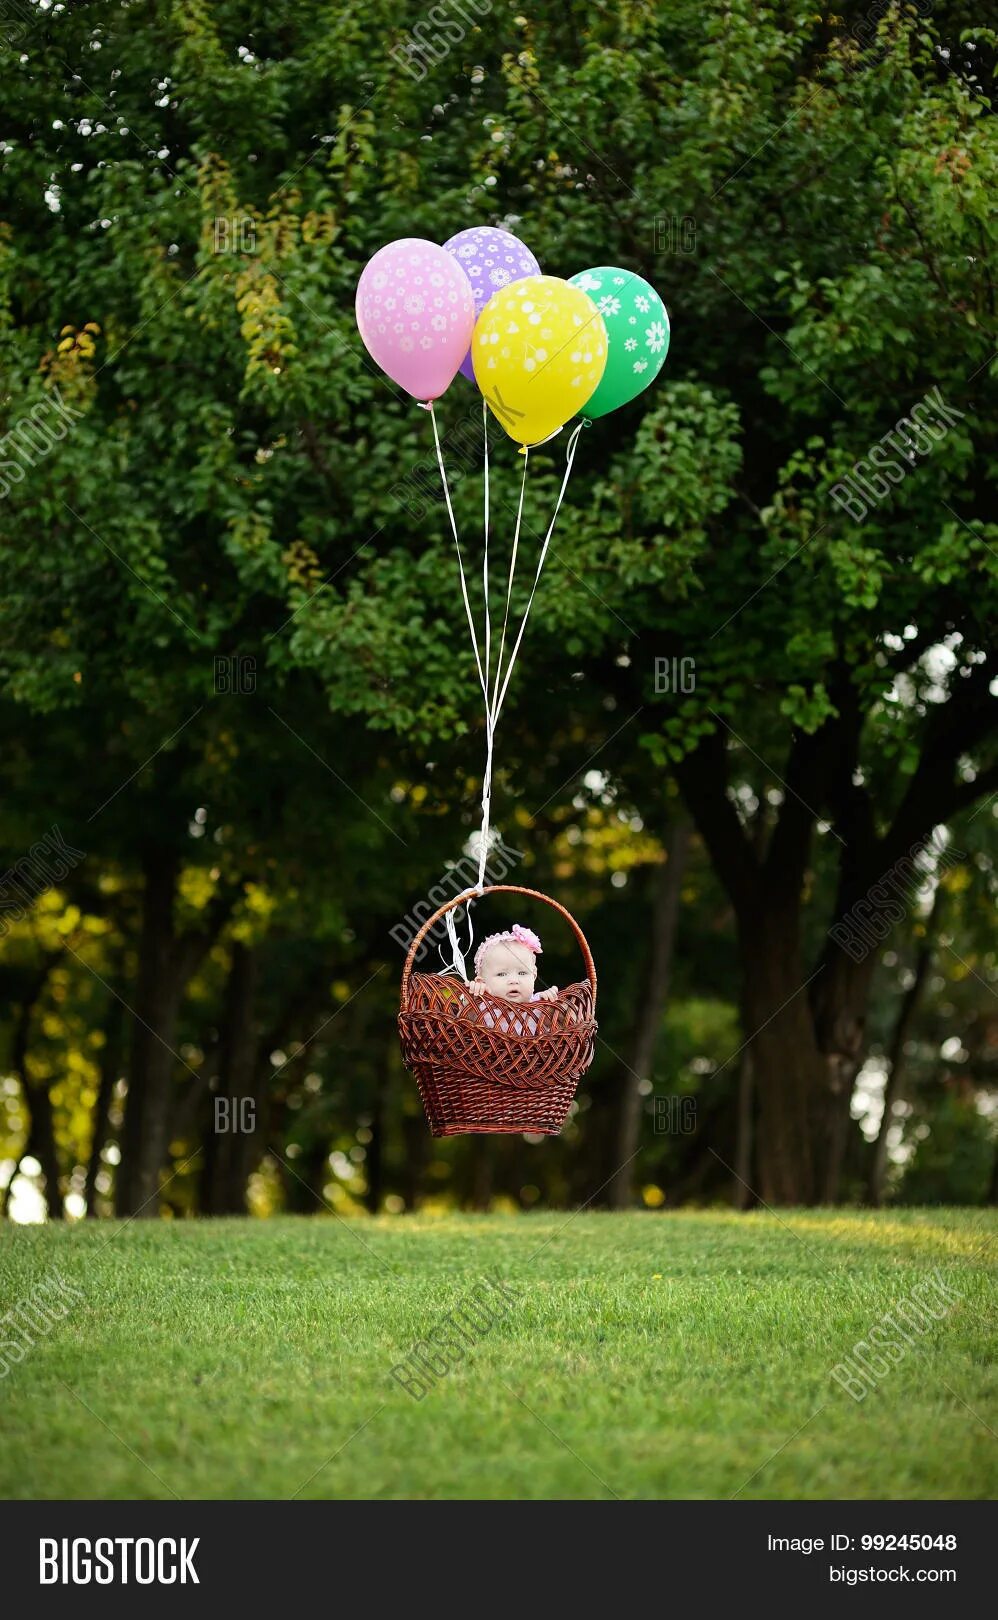 Корзина для фотосессии с воздушными шарами. Корзина с воздушными шарами для фотосессии. Воздушный шар с цветами в корзине. Ребенок в корзине с шарами. Воздушный шар с корзиной для фотосессии.